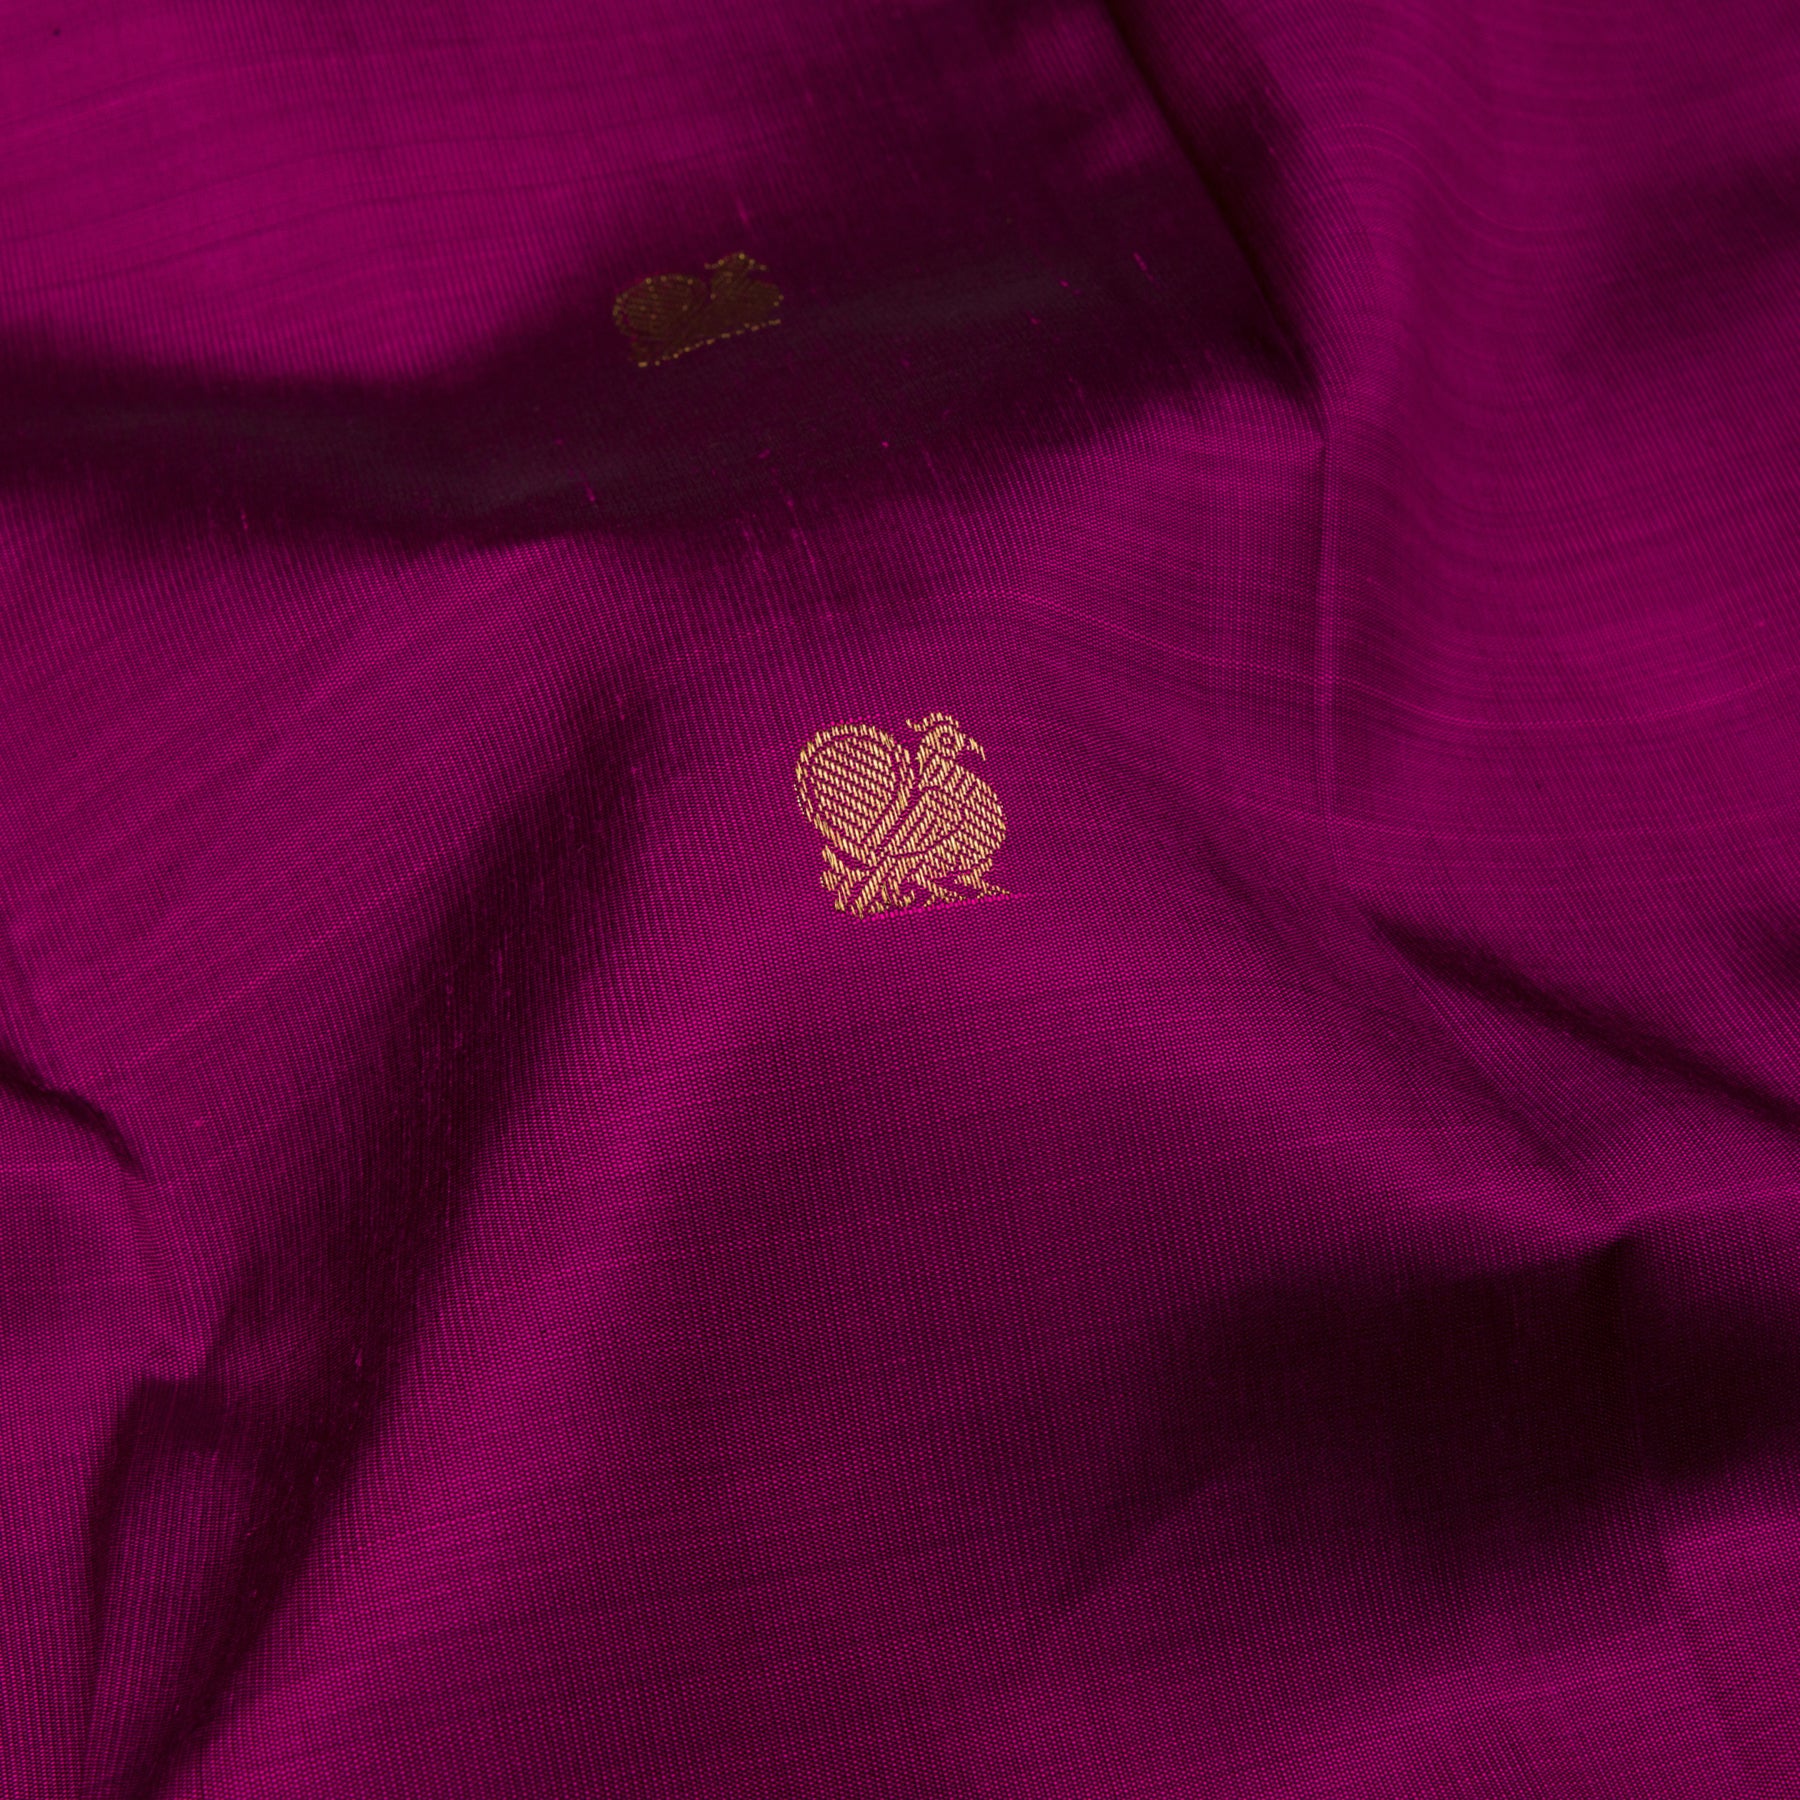 Kanakavalli Kanjivaram Silk Sari 23-110-HS001-11602 - Fabric View